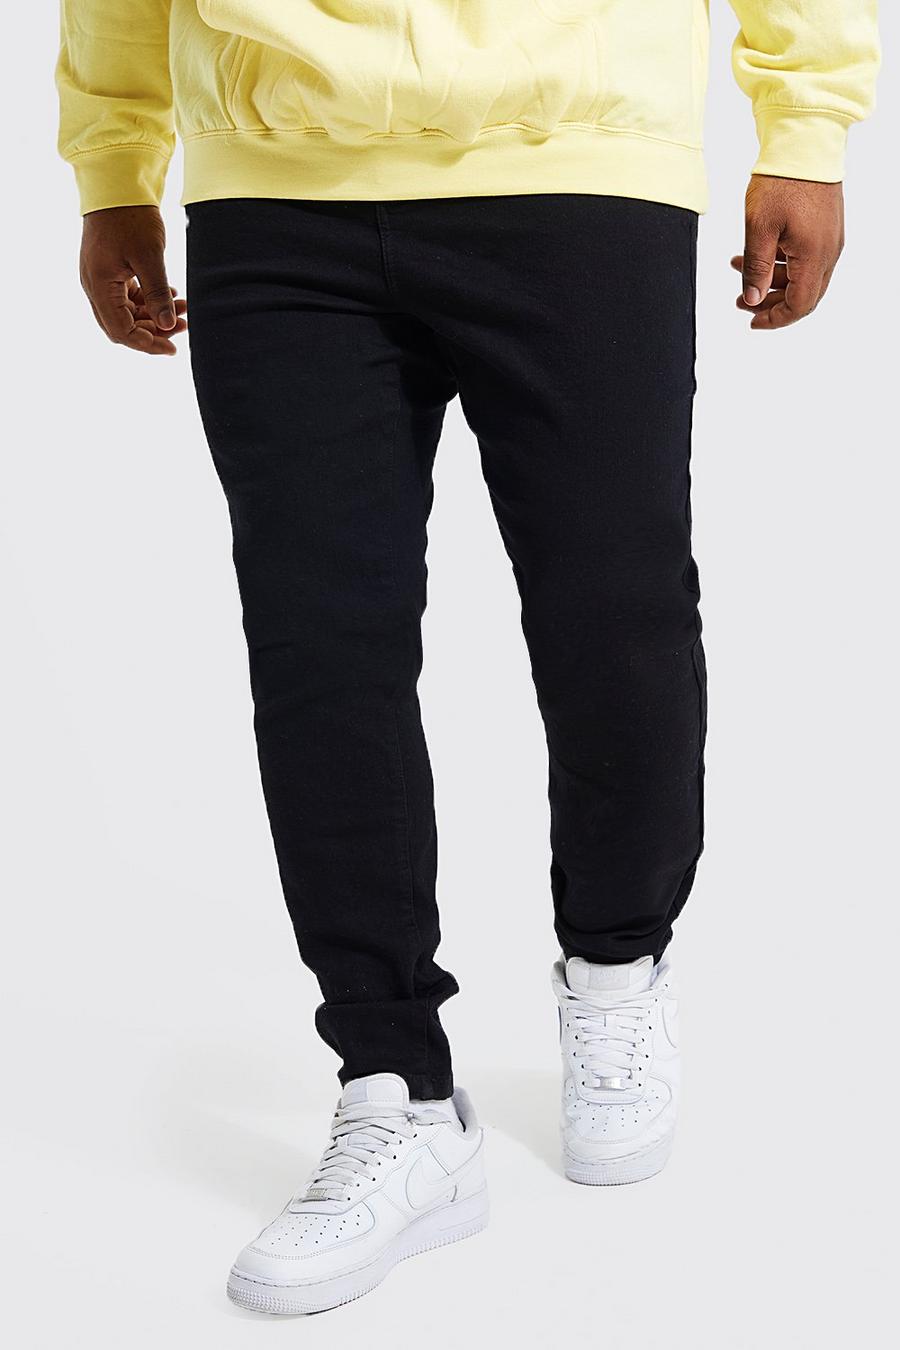 שחור דהוי סופר סקיני ג'ינס בשילוב פוליאסטר ממוחזר, מידות גדולות